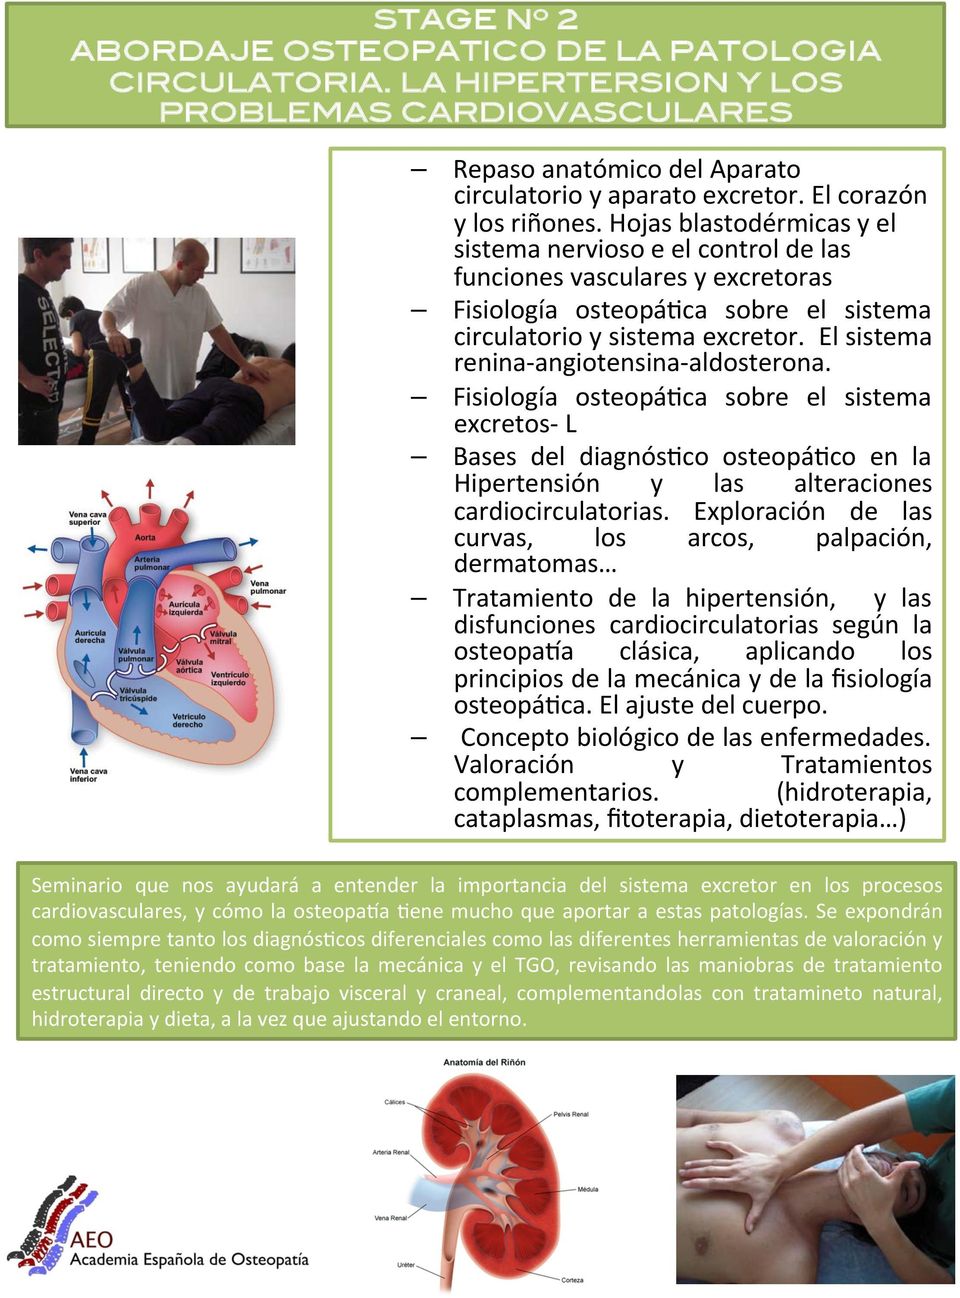 El sistema renina- angiotensina- aldosterona. Fisiología osteopábca sobre el sistema excretos- L Bases del diagnósbco osteopábco en la Hipertensión y las alteraciones cardiocirculatorias.